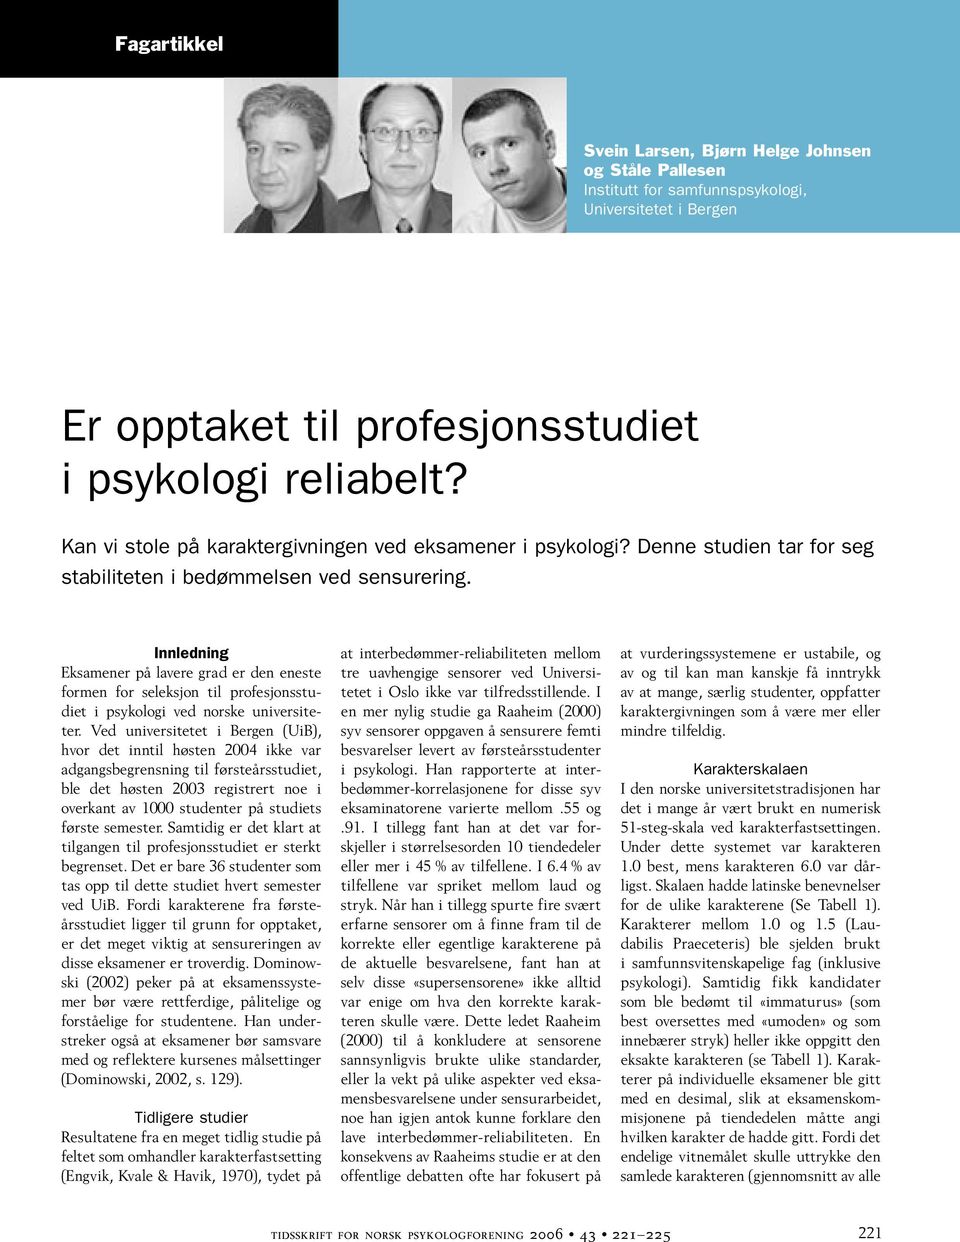 Innledning Eksamener på lavere grad er den eneste formen for seleksjon til profesjonsstudiet i psykologi ved norske universiteter.